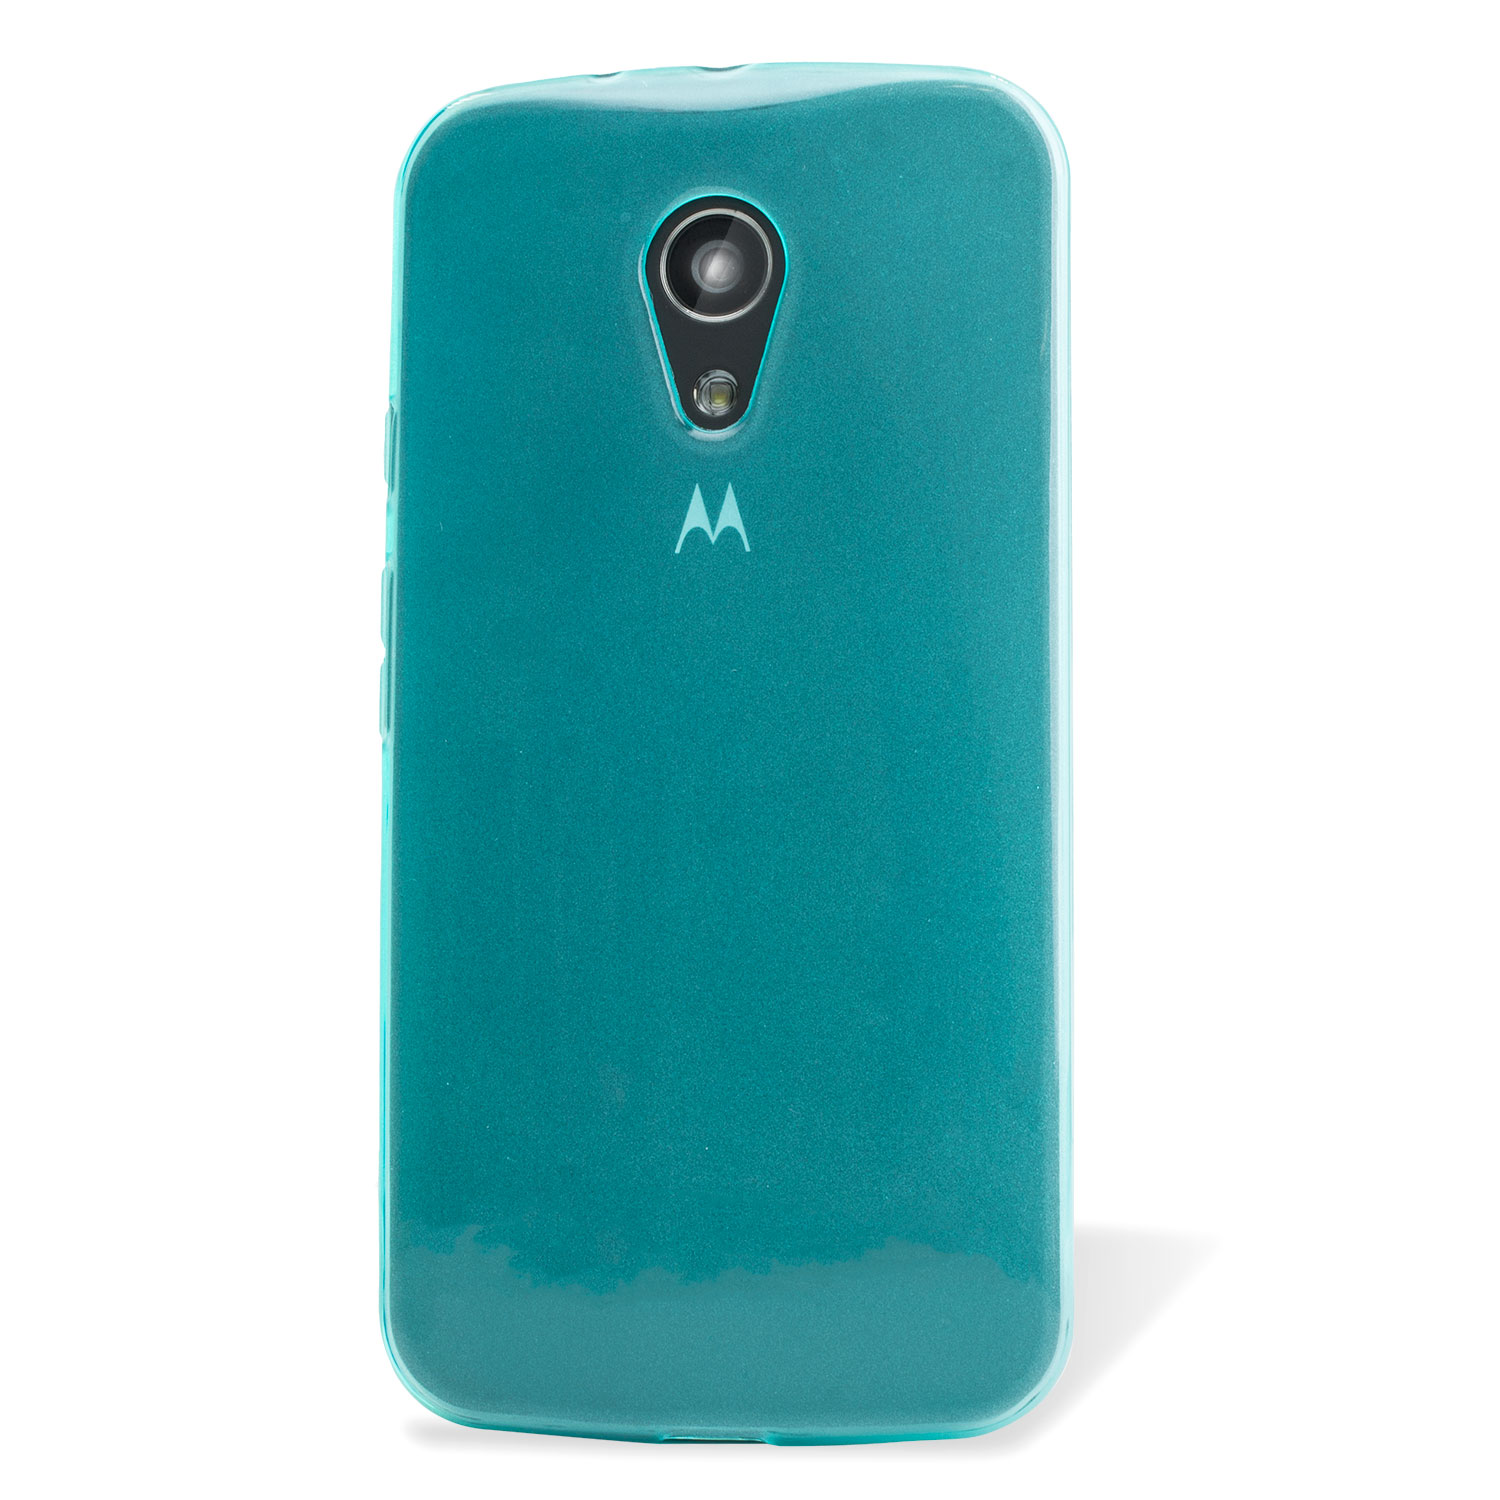 Funda Motorola Moto G 2014 FlexiShield - Azul